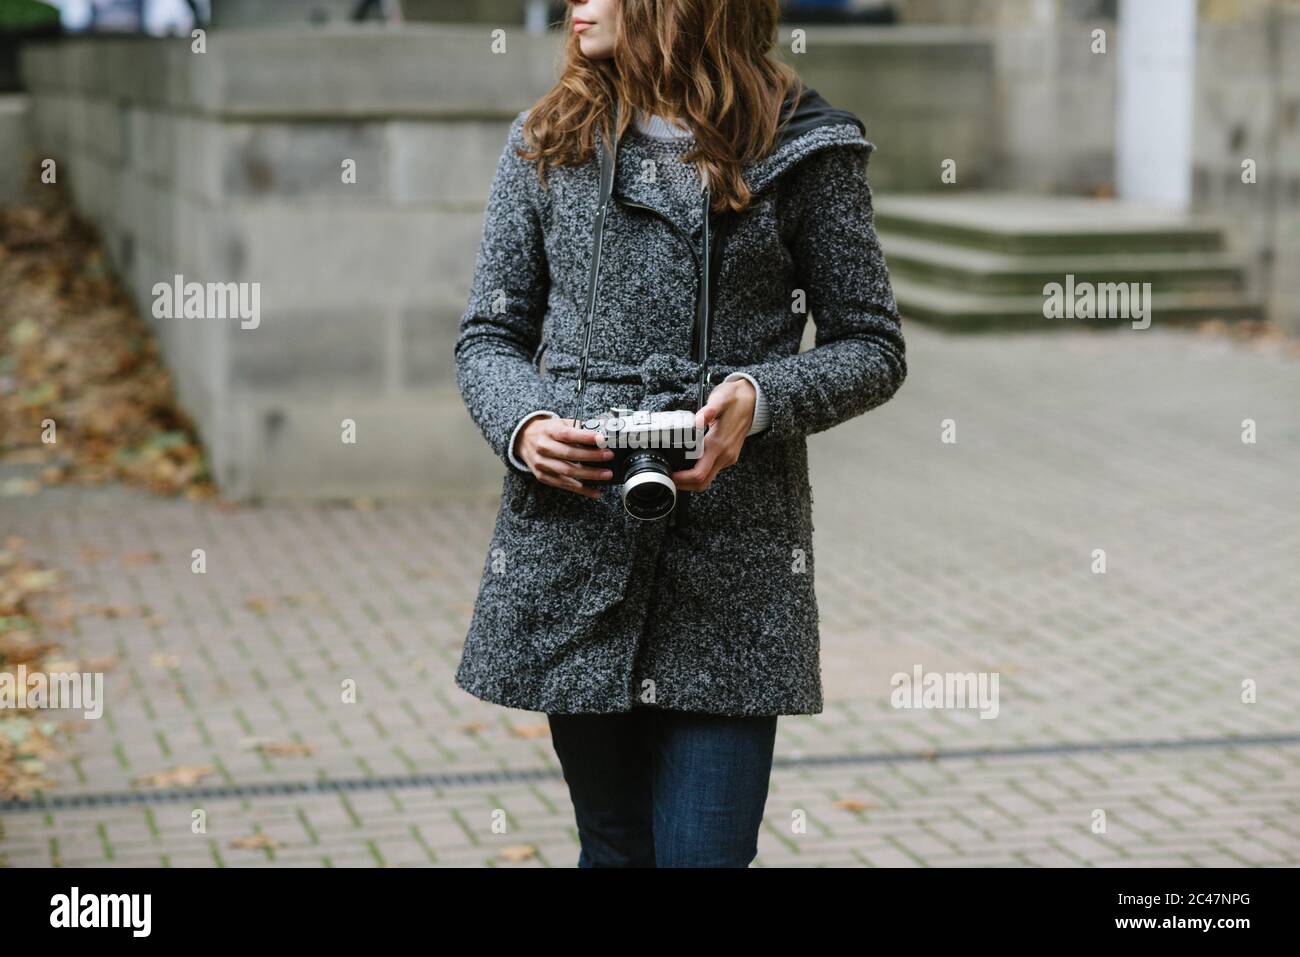 Belle femme debout à l'extérieur, portant un Jean bleu et un manteau gris et tenant un appareil photo vintage Banque D'Images